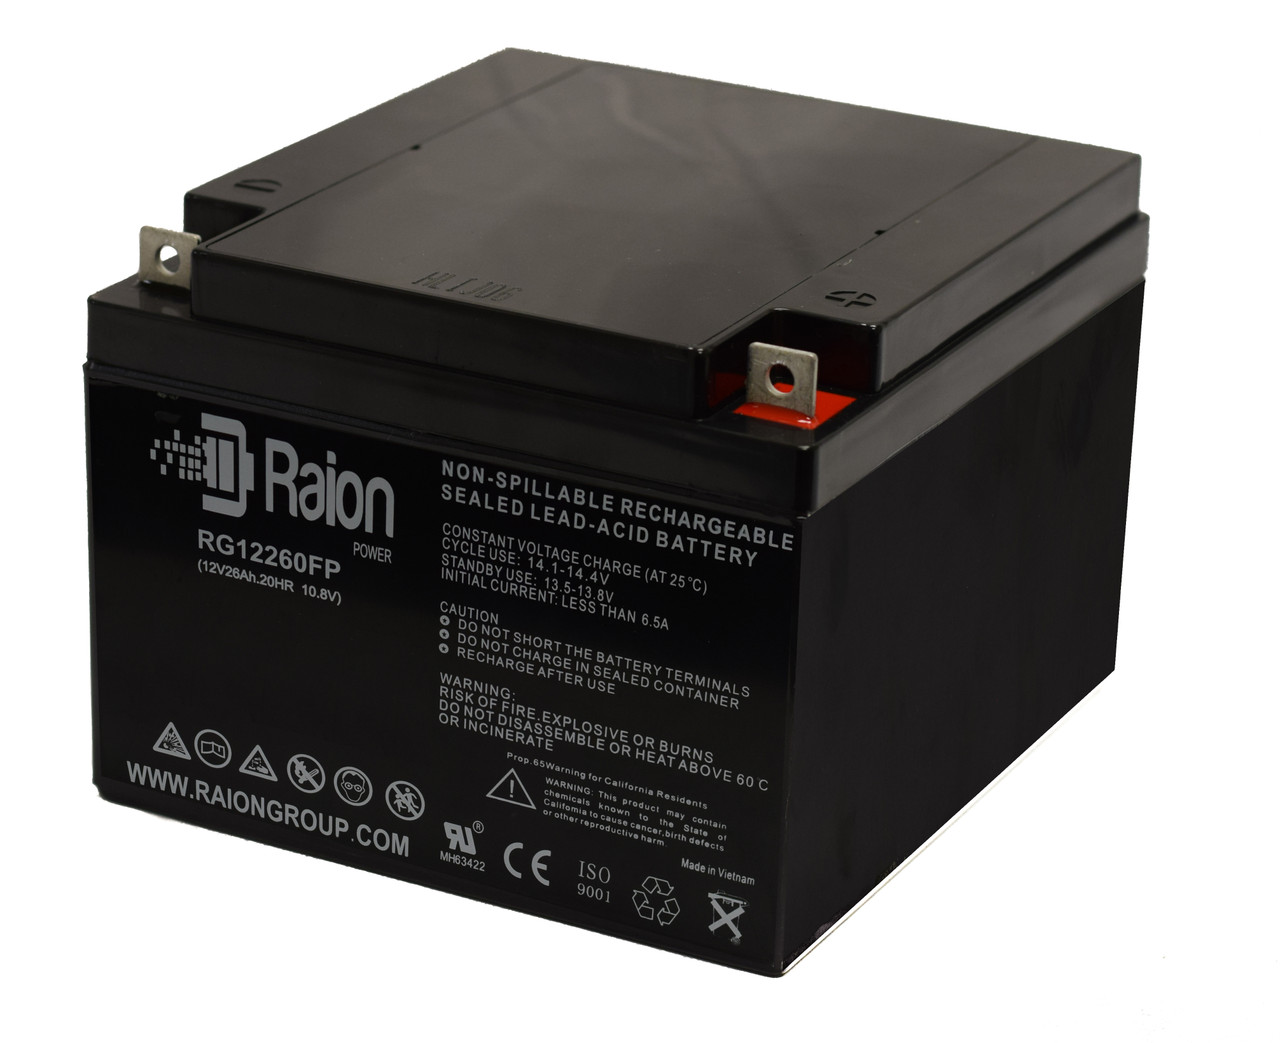 Raion Power Replacement 12V 26Ah Battery for Kinghero SJ12V24Ah-D - 1 Pack